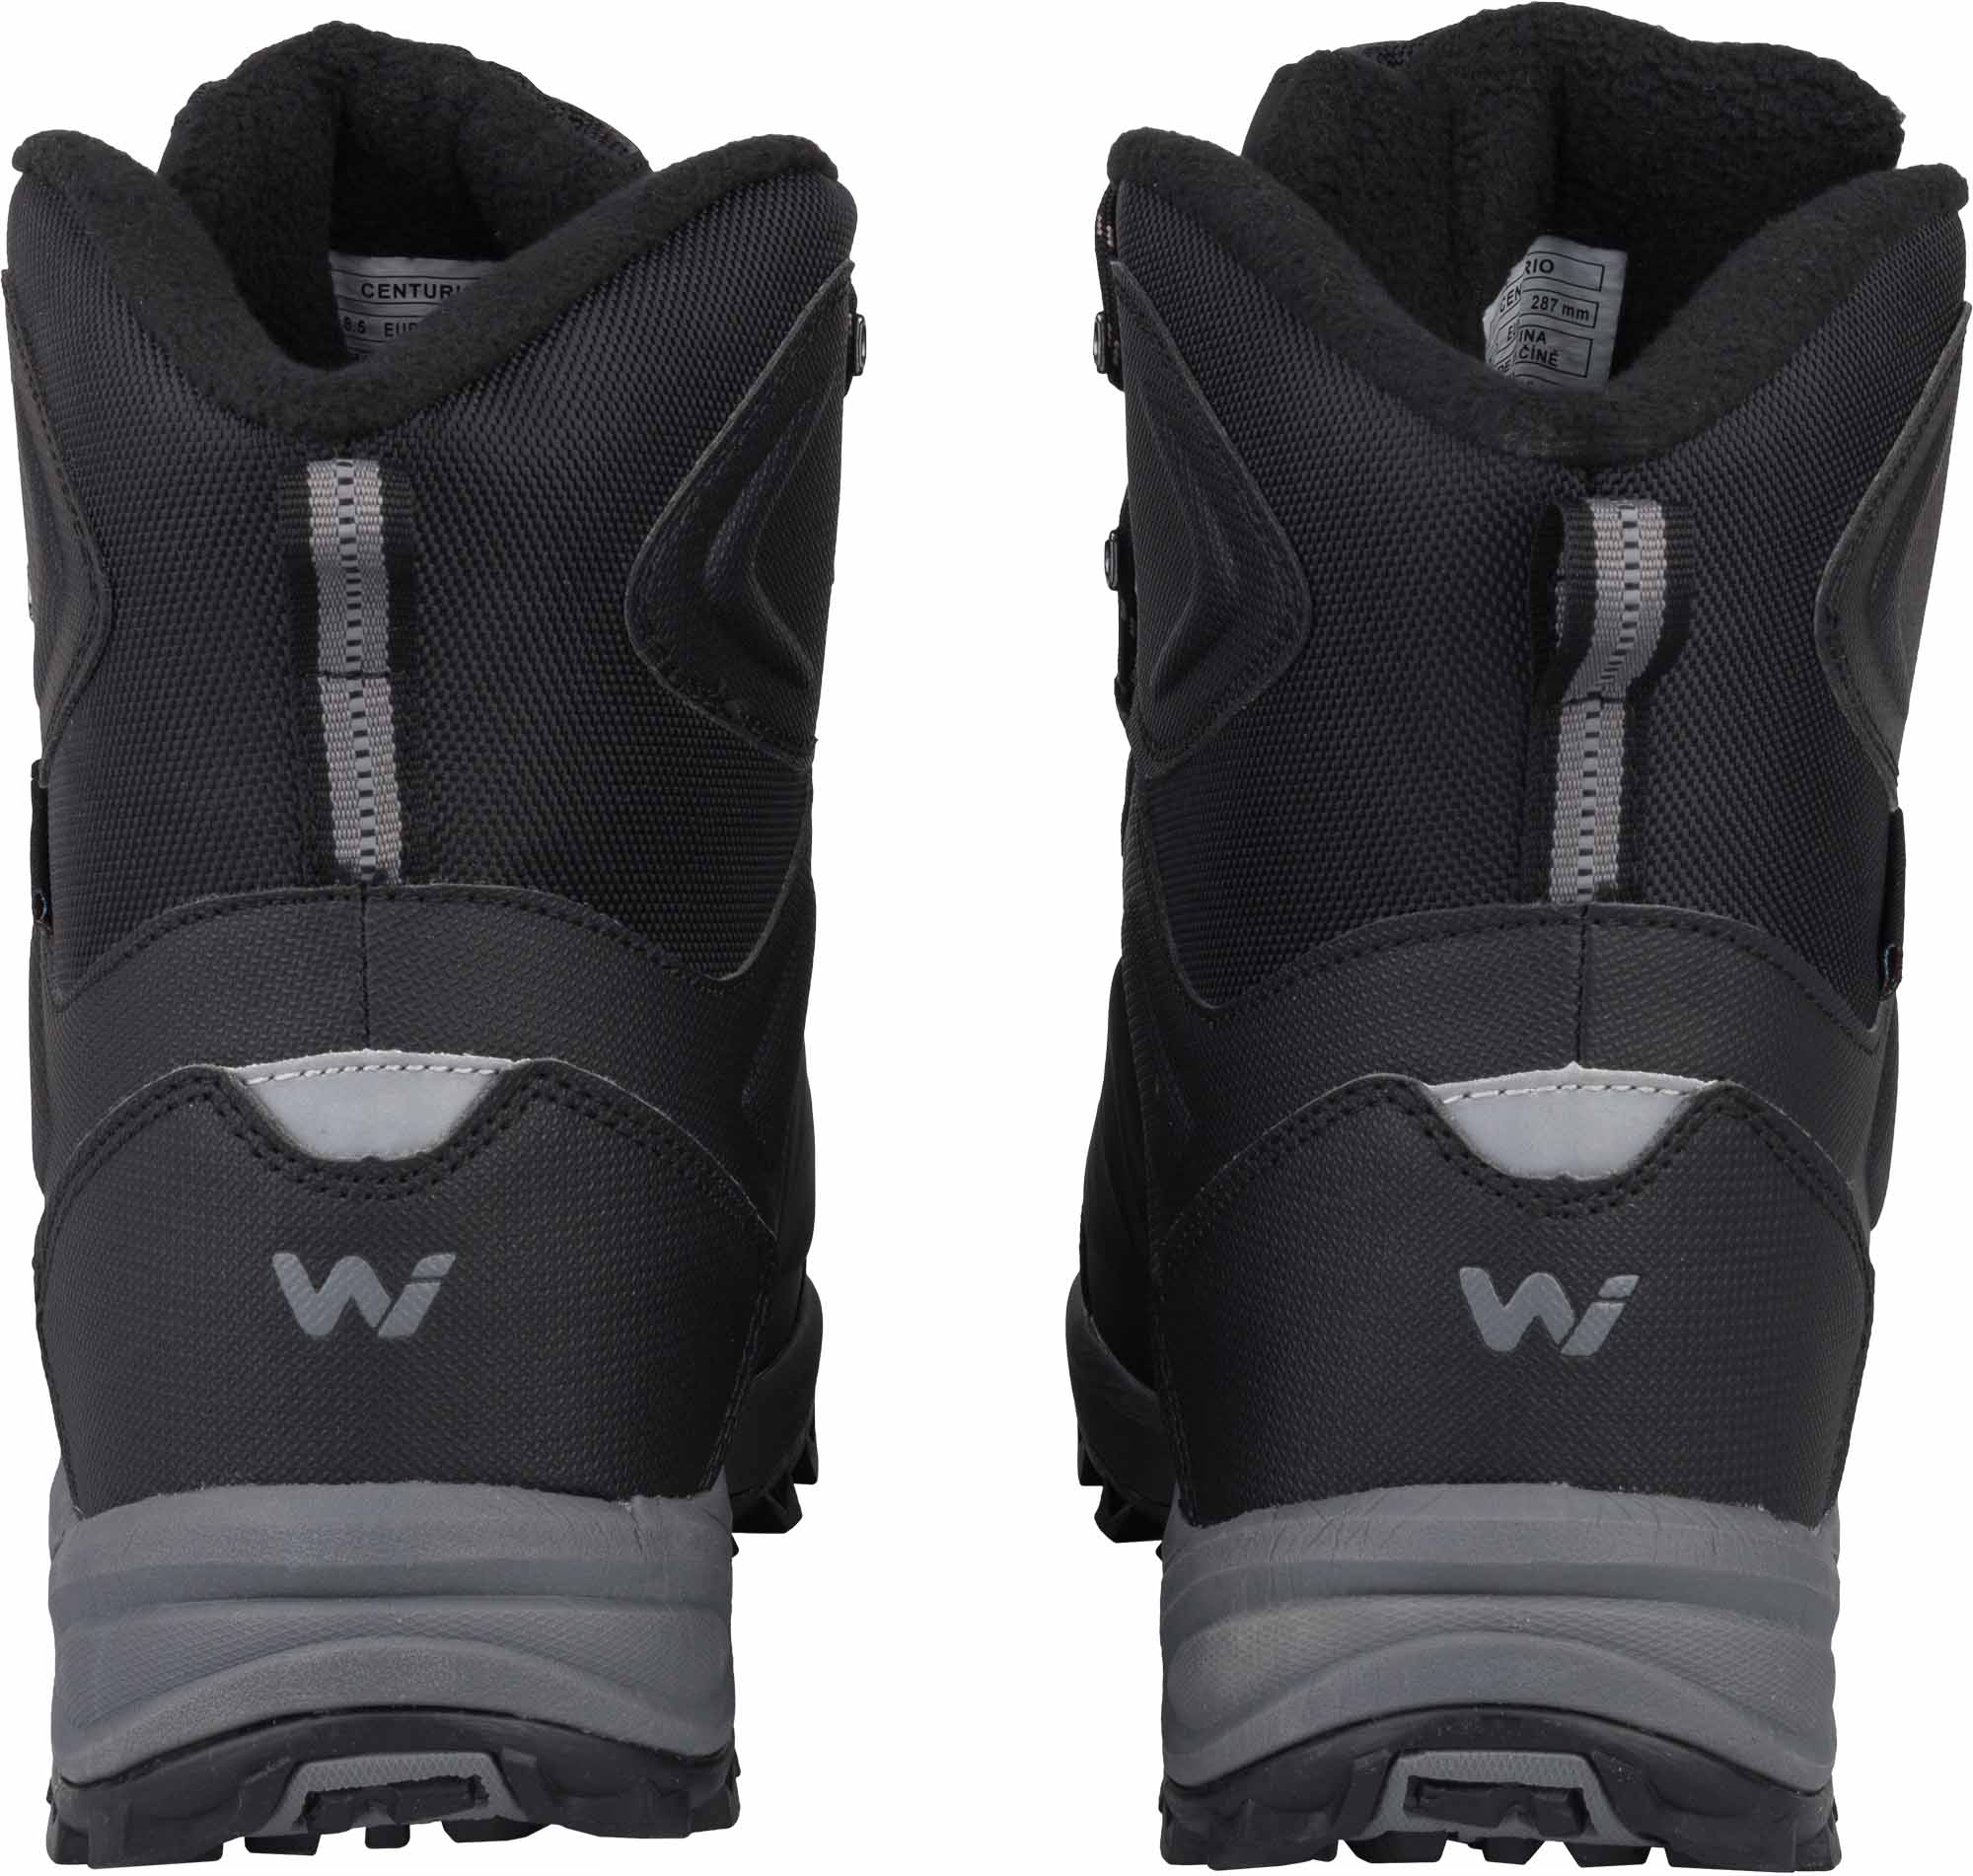 Men's winter shoes